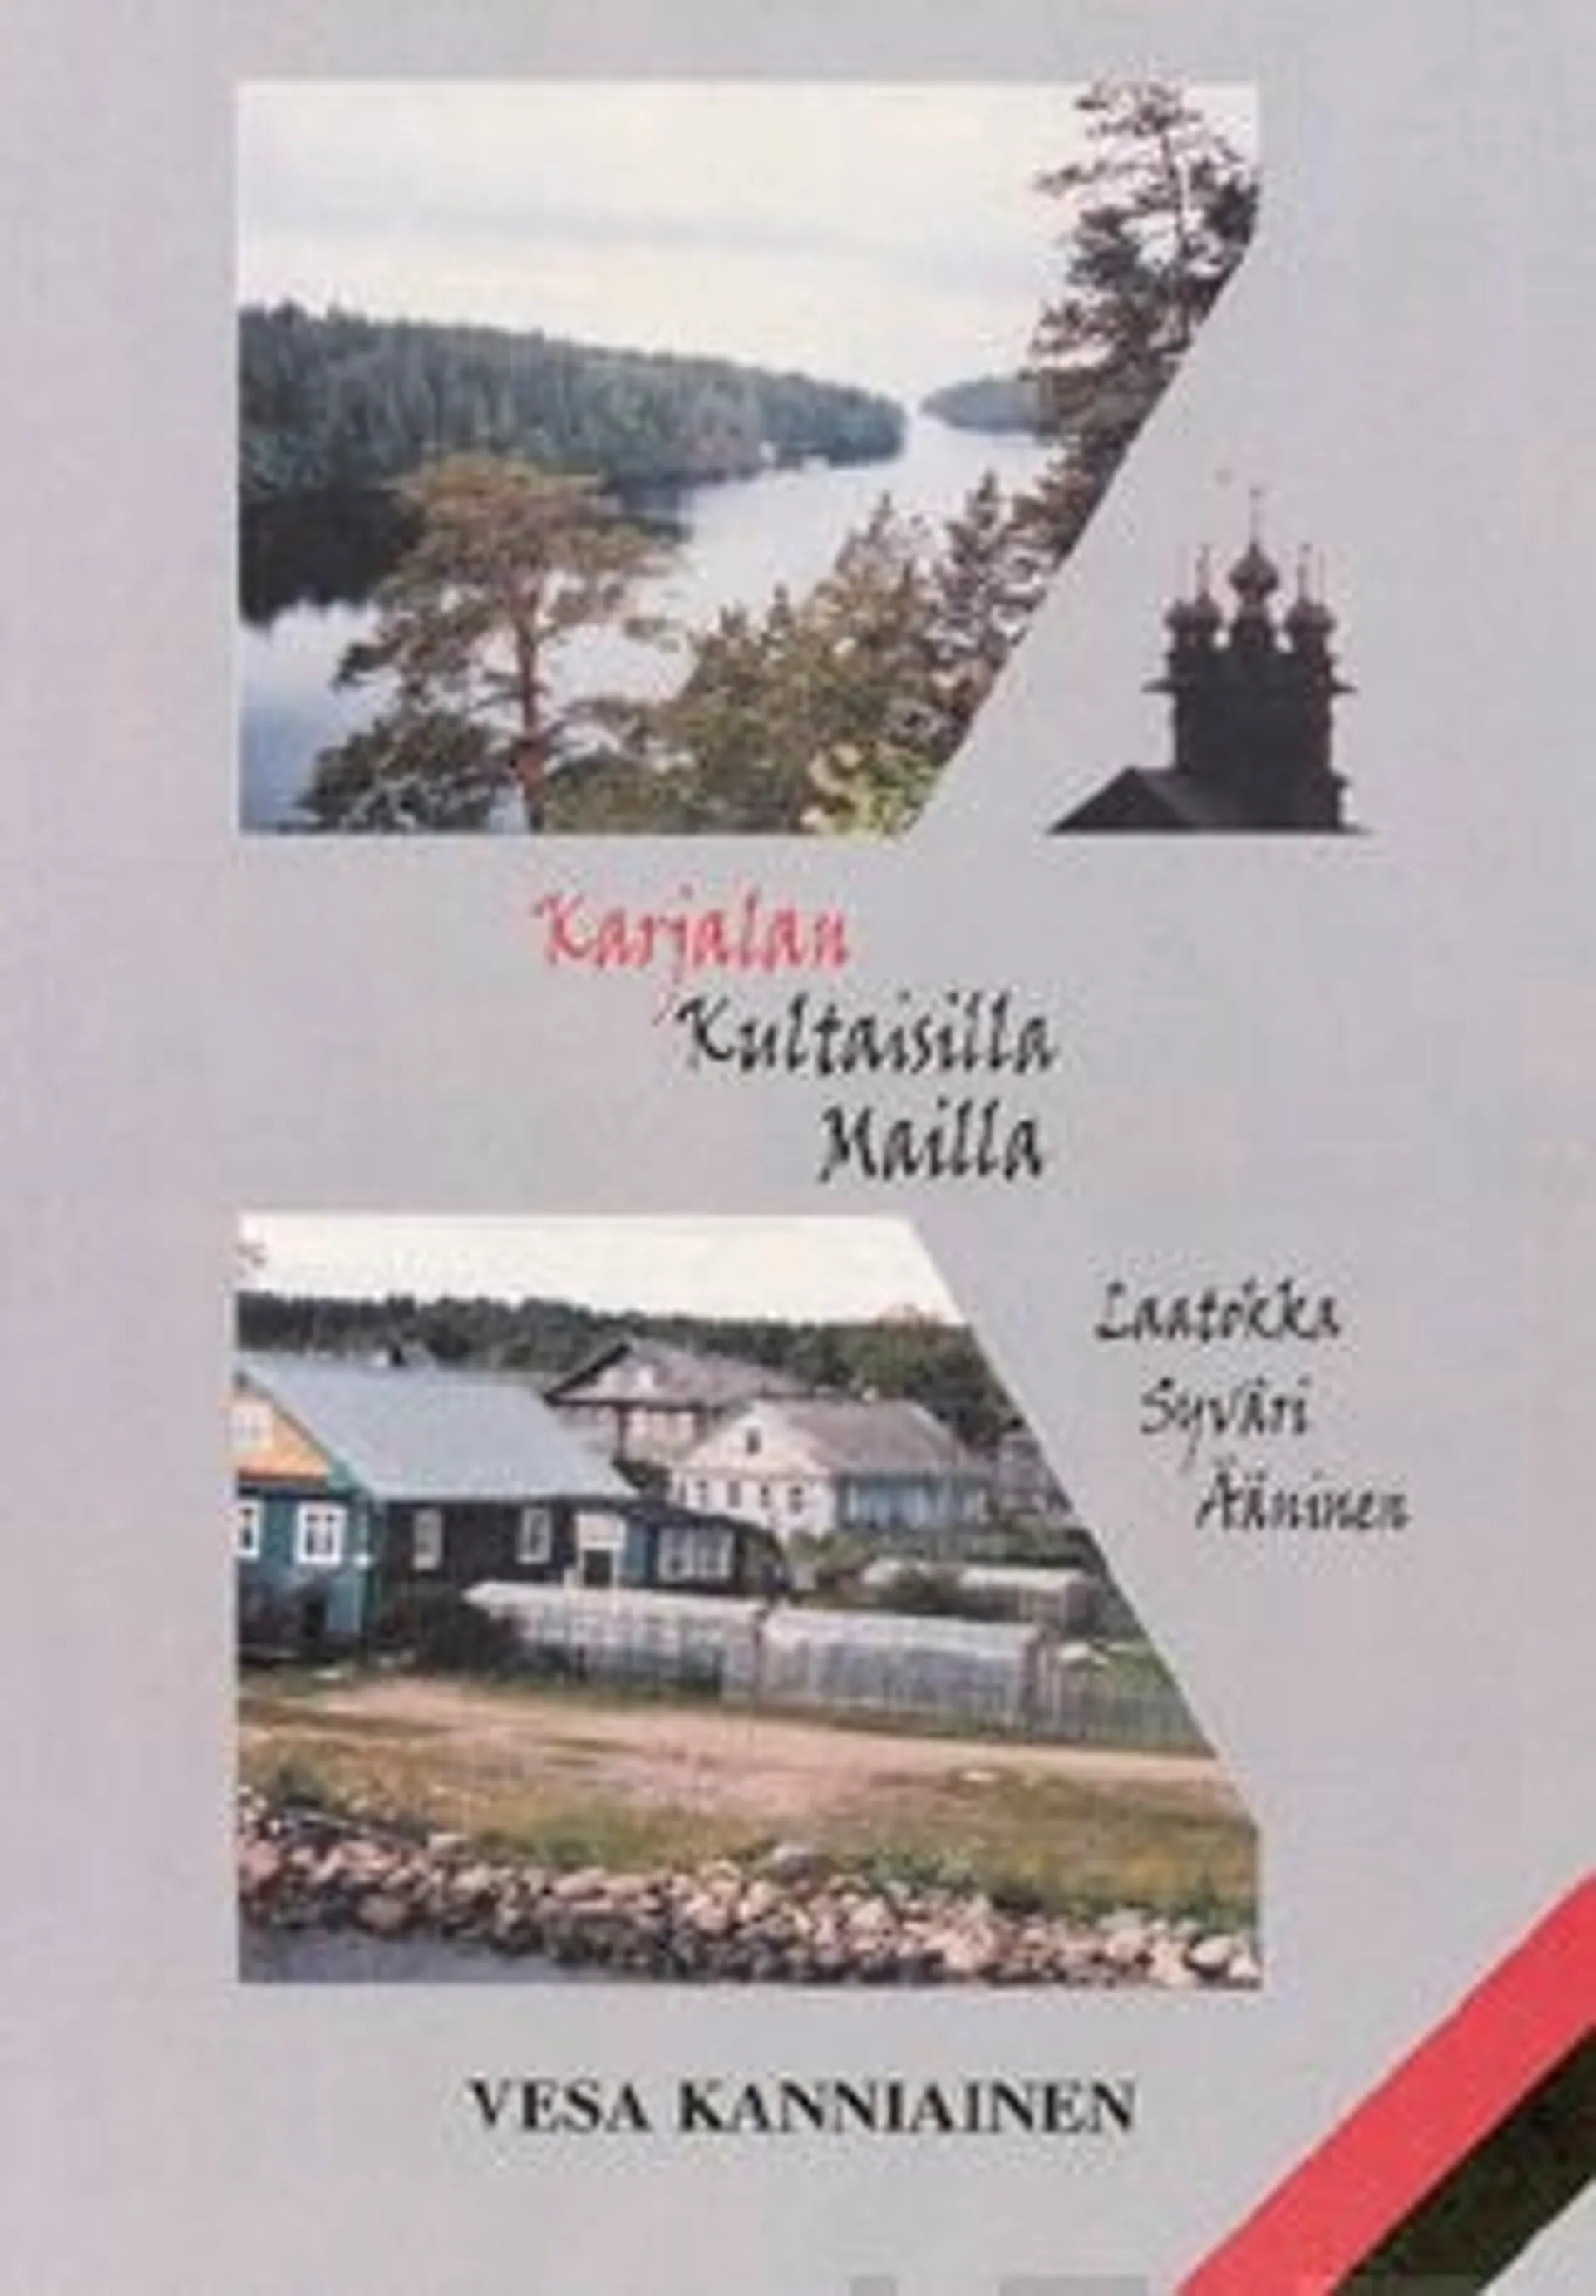 Kanniainen, Karjalan kultaisilla mailla